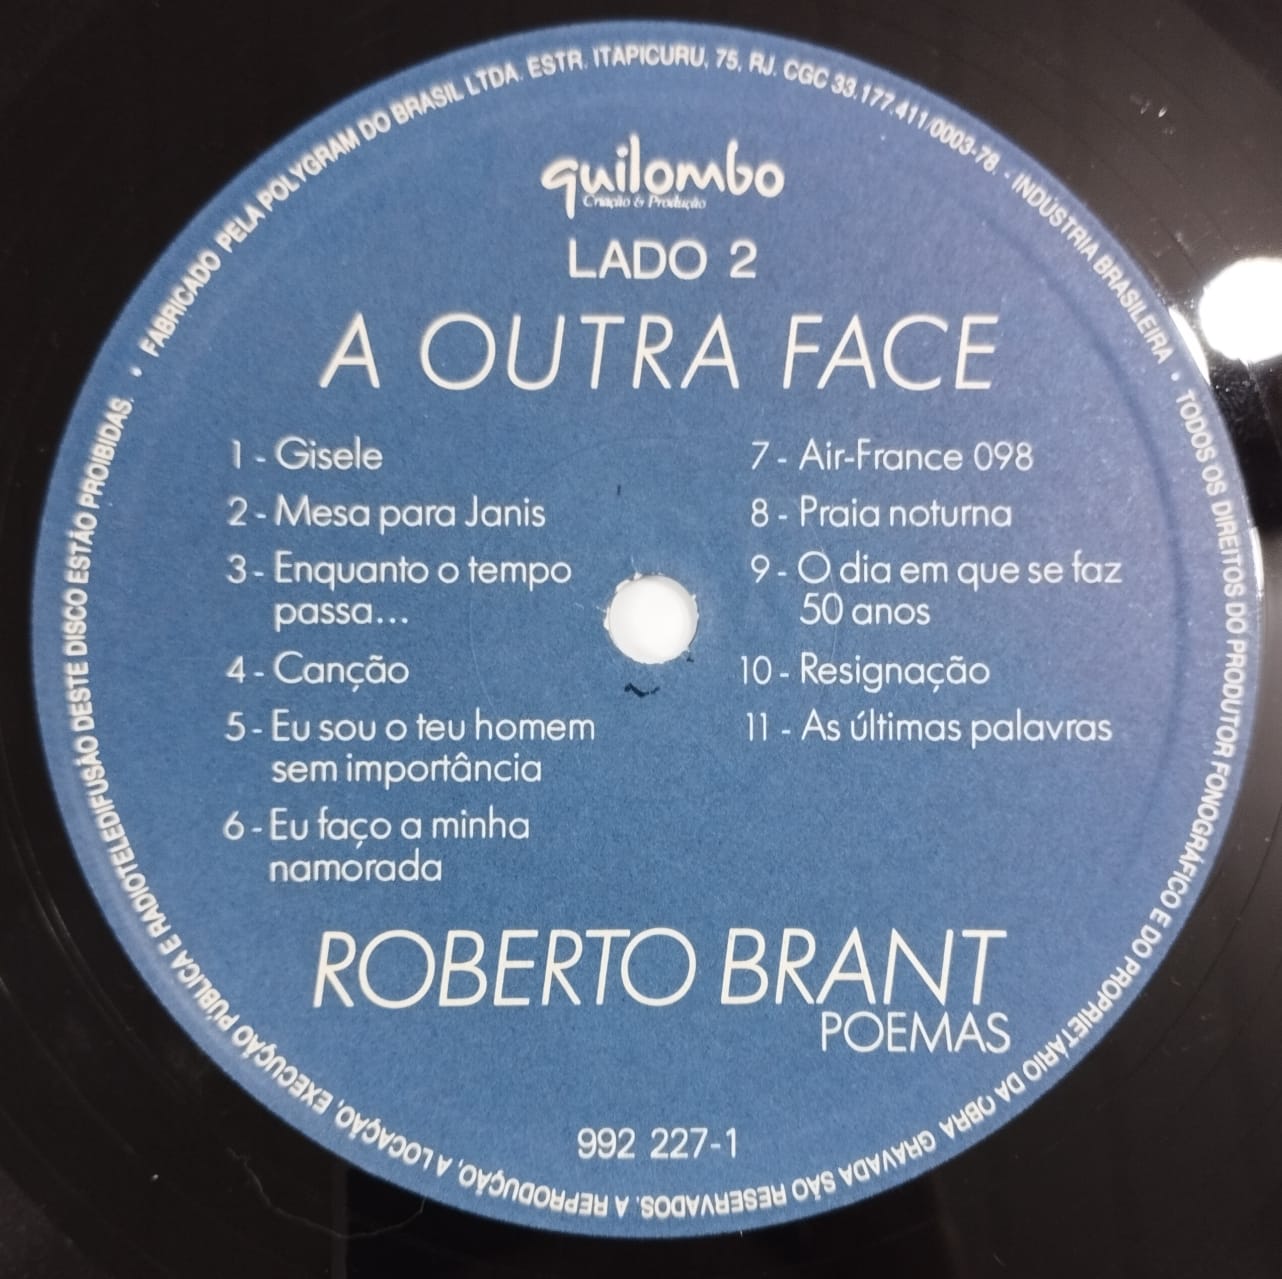 Roberto Brant Poemas ‎– A Outra Face (Álbum)